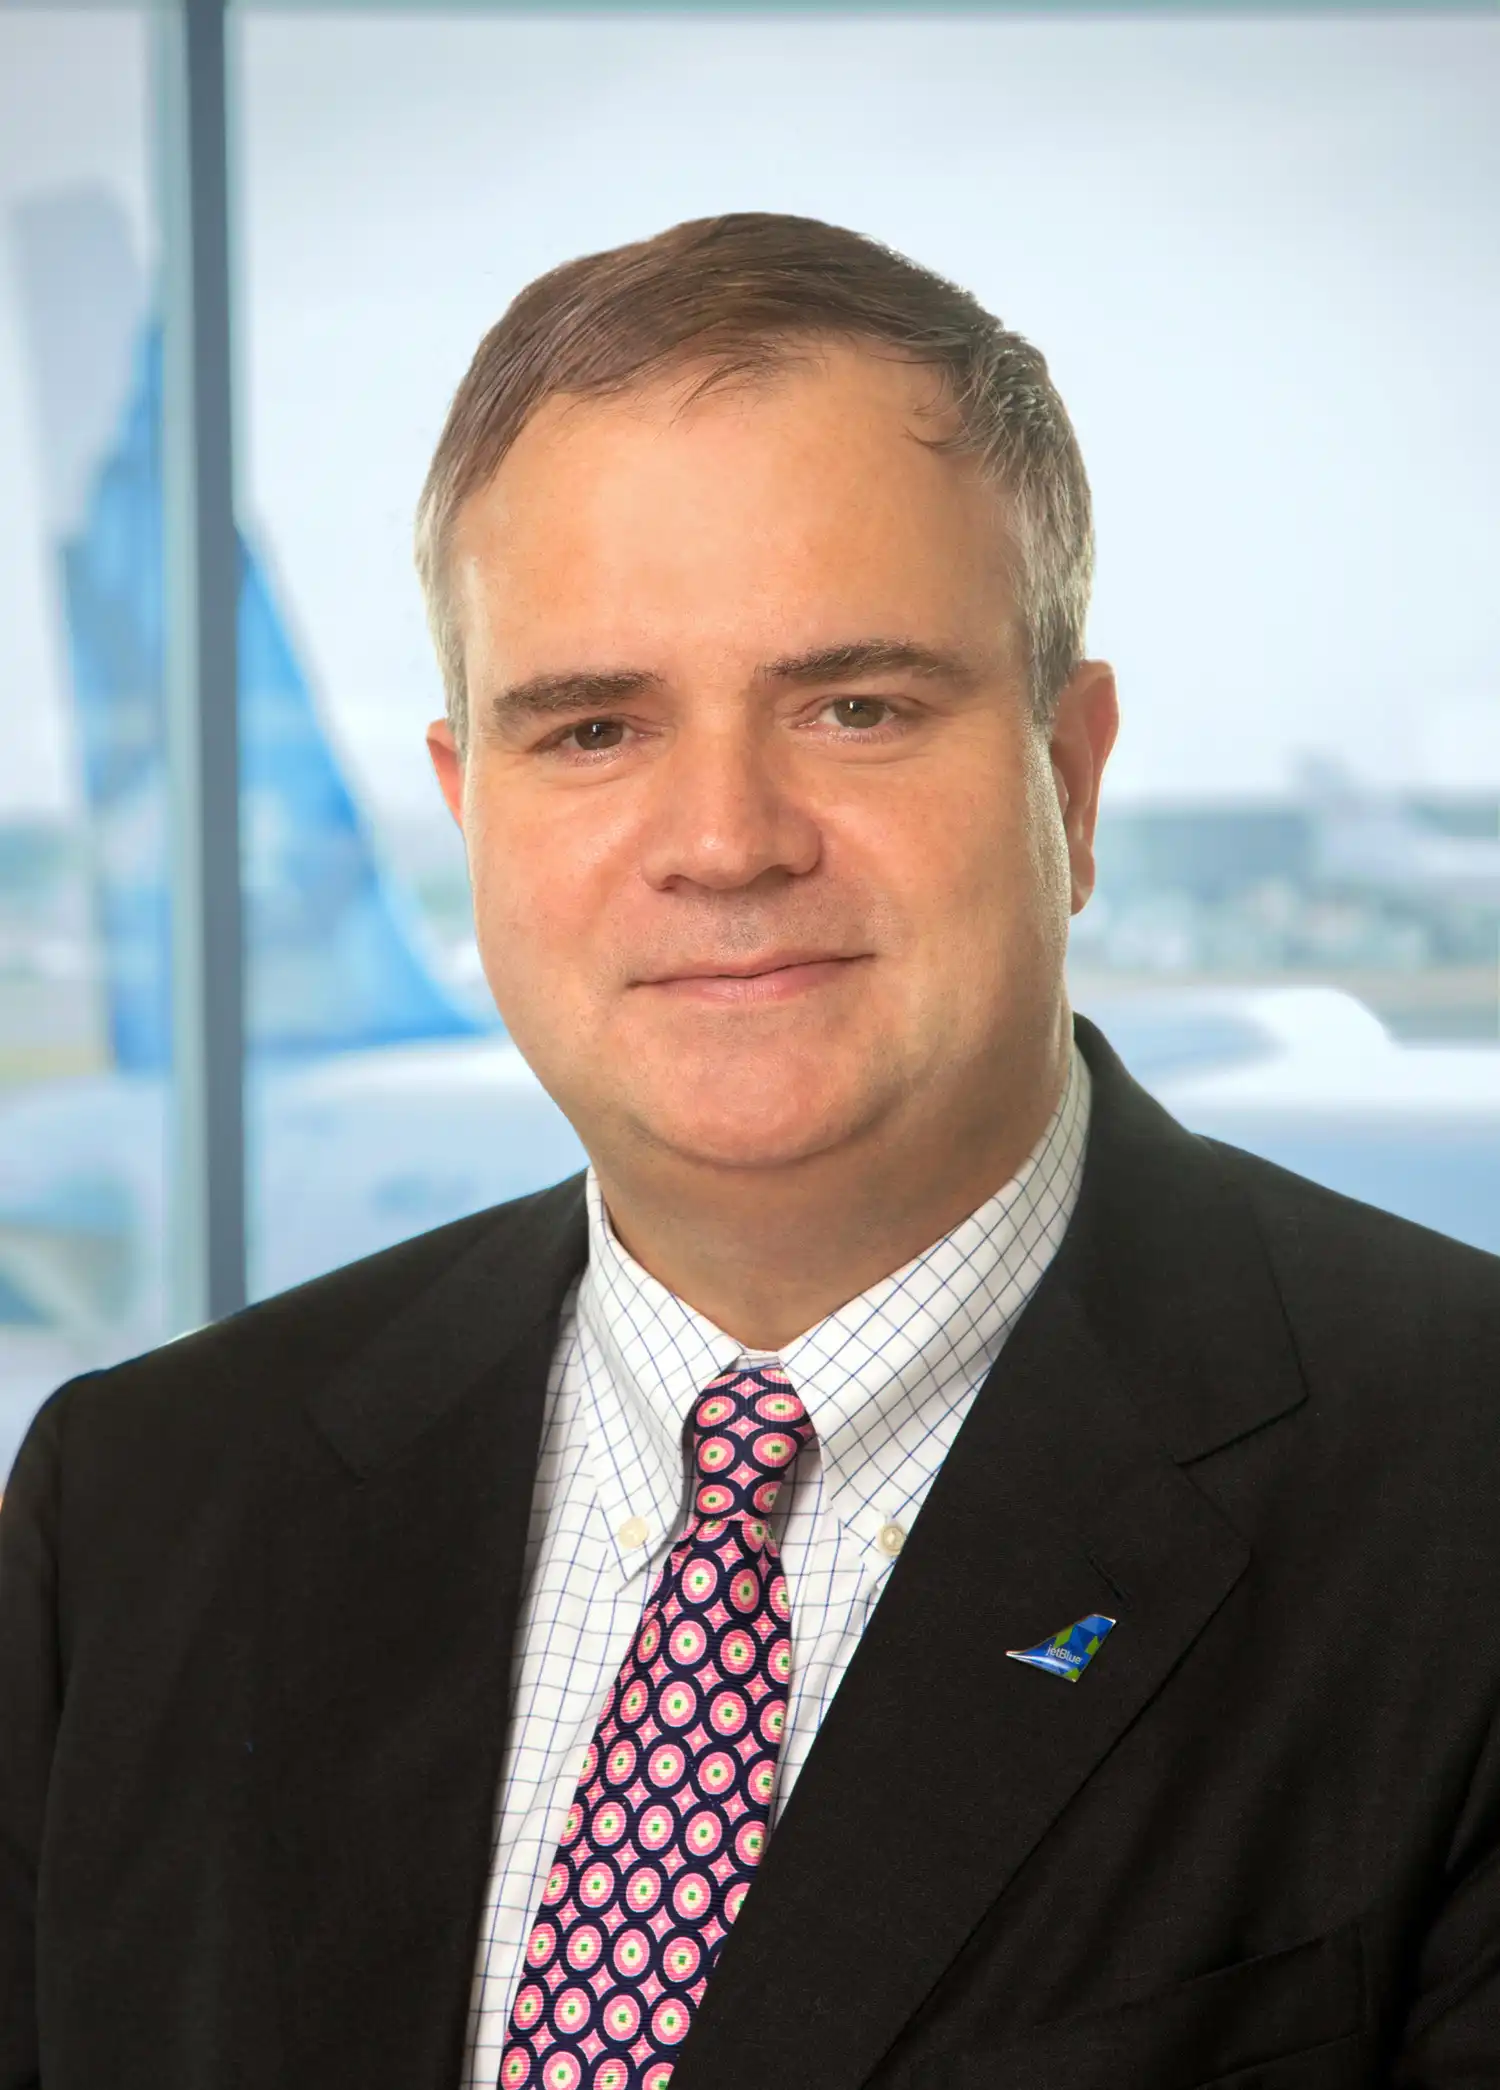 前捷蓝航空CEO罗宾·海斯被任命为空客北美区首席执行官